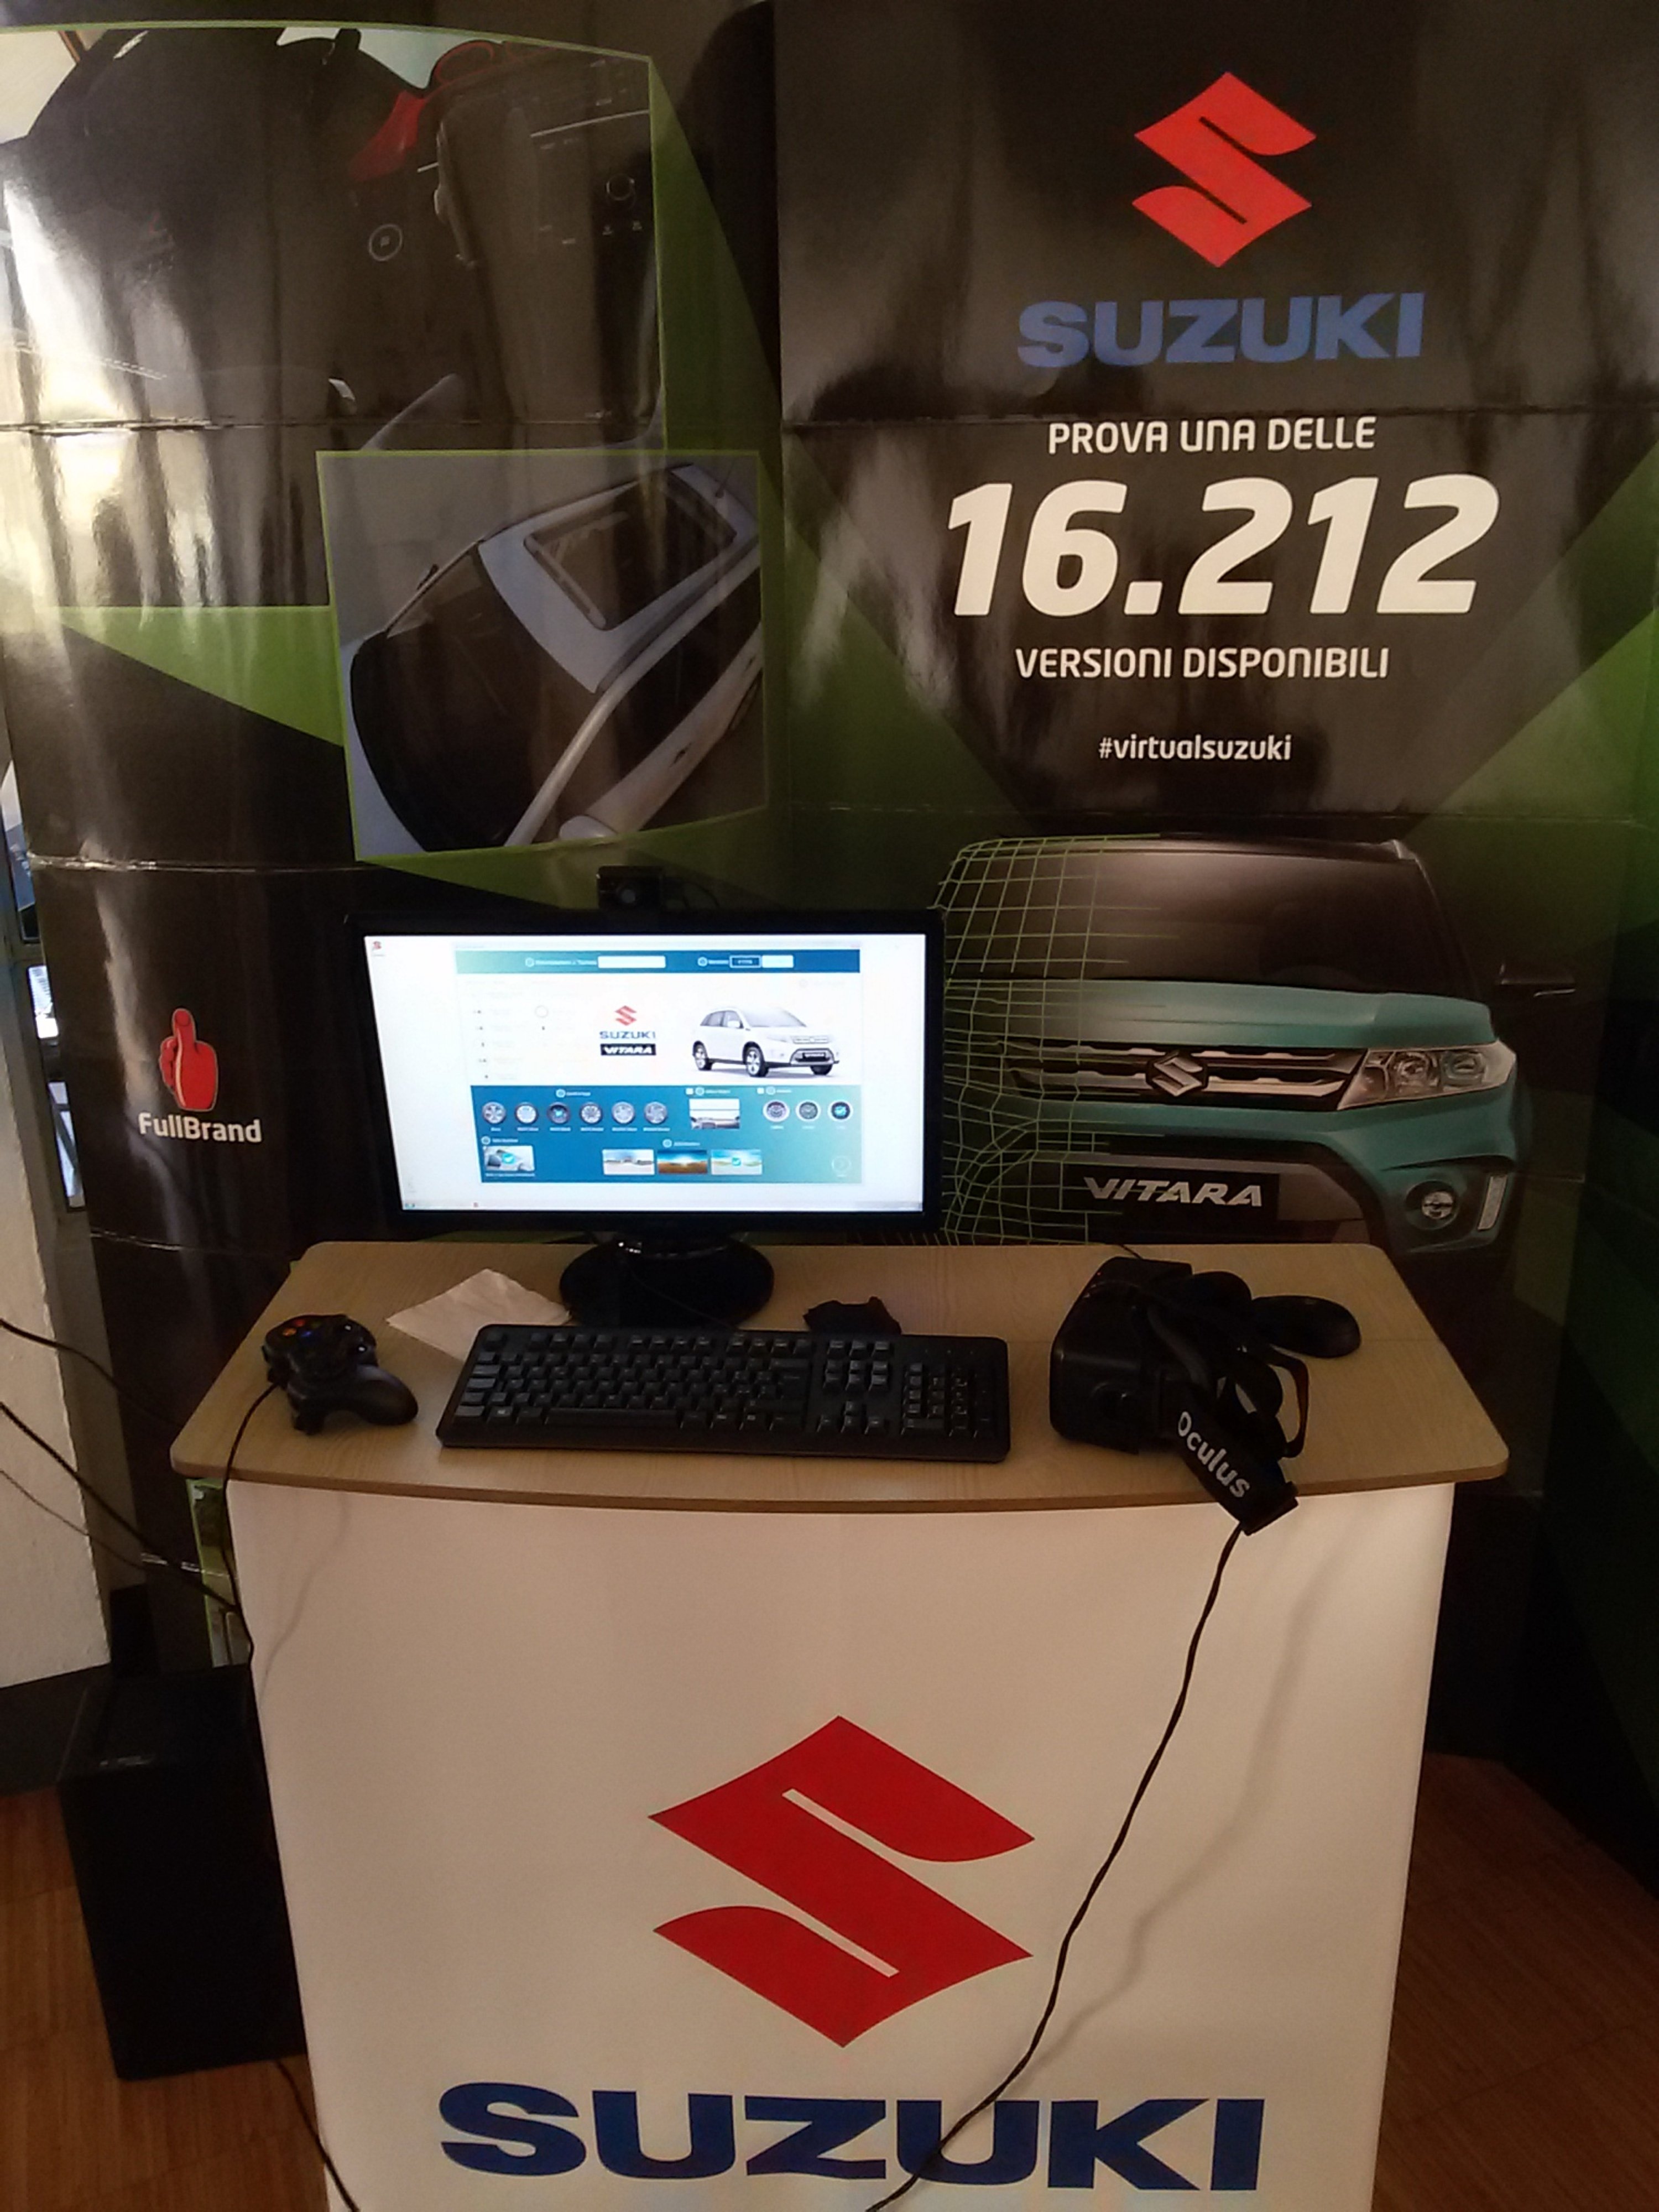 In arrivo il nuovo simulatore Suzuki: percezione di tutte le varianti possibili